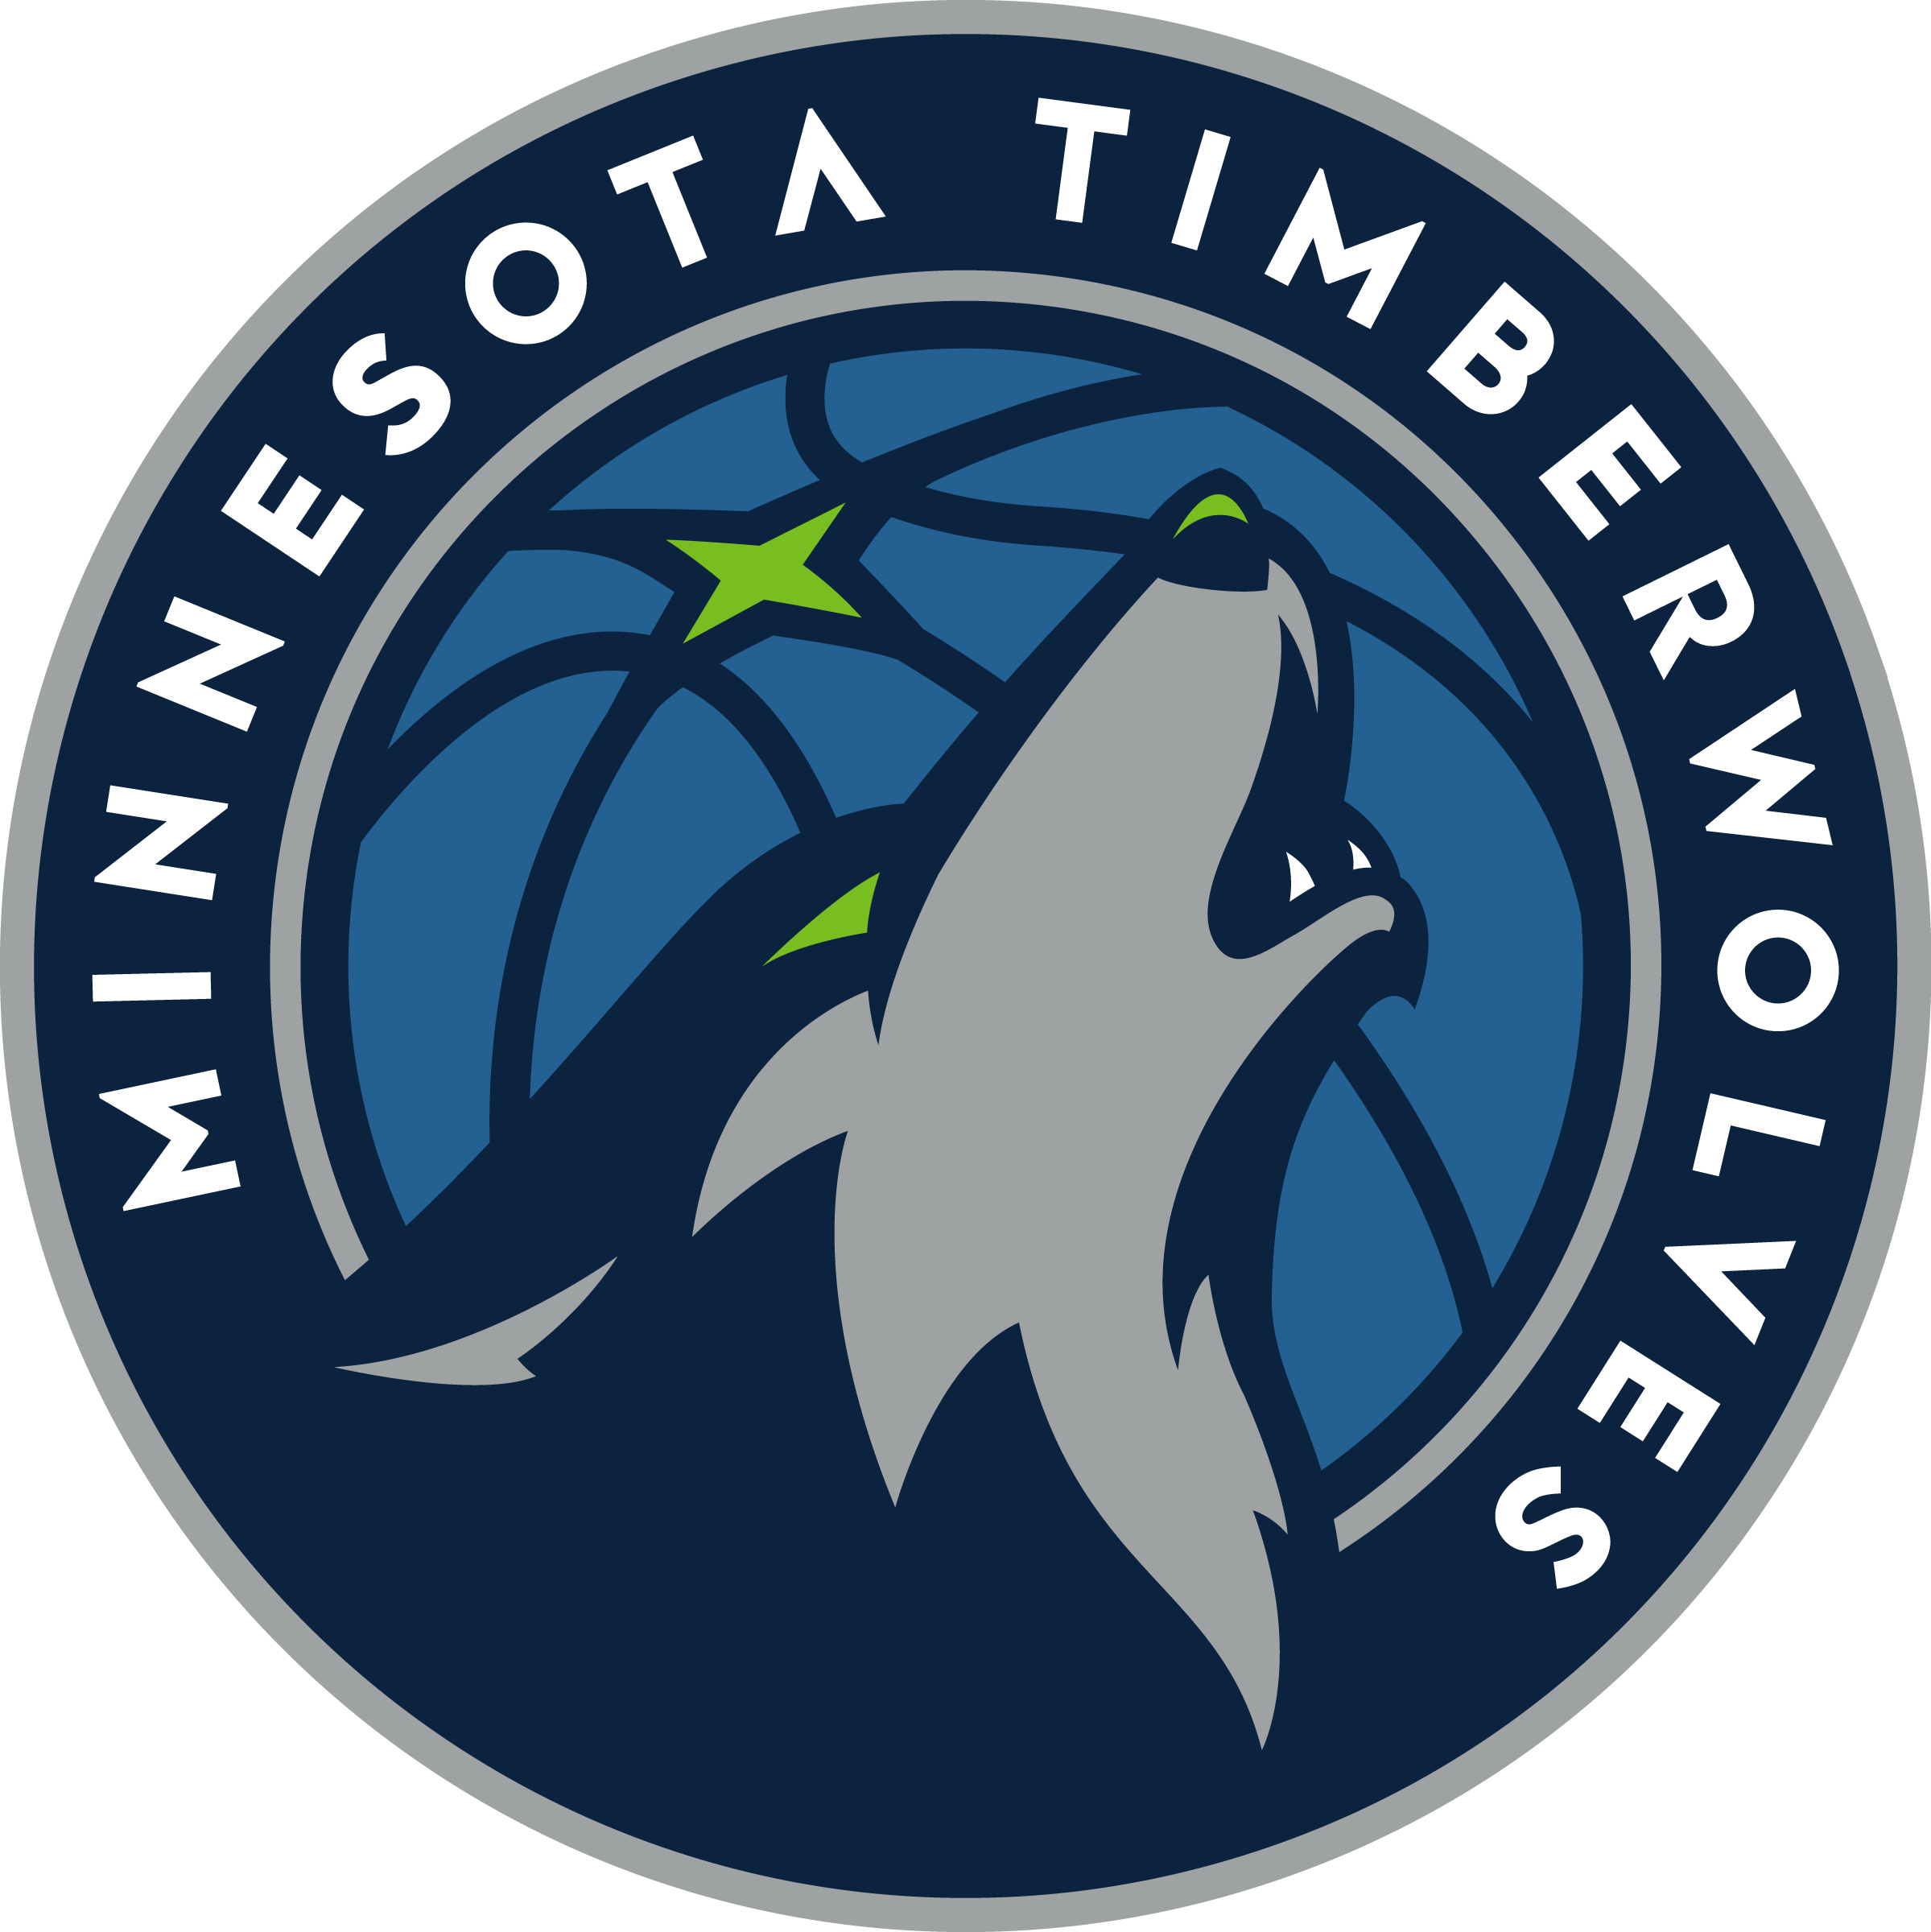 Men's New Era White/Navy Minnesota Timberwolves Retro Title 9FIFTY